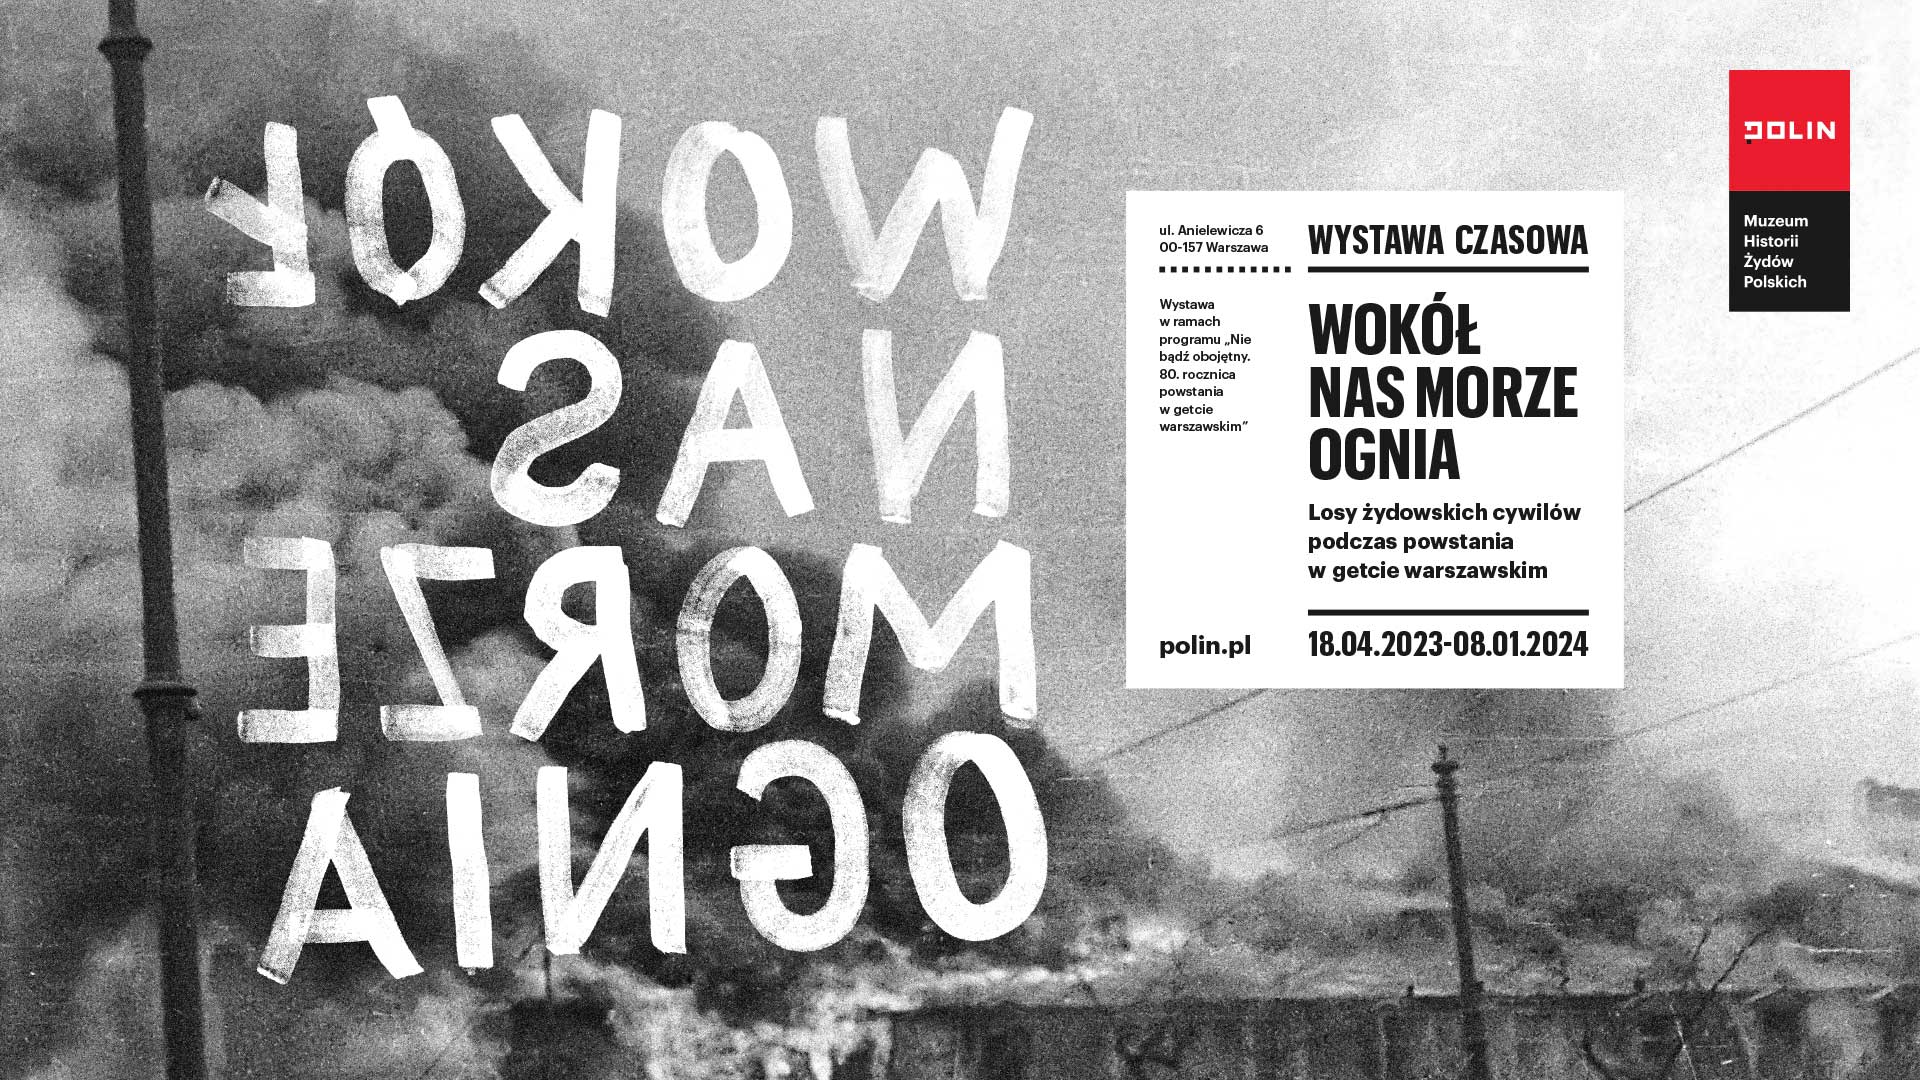 Plakat wystawy "Wokół nas morze ognia" - na czarno-białym zdjęciu płonącego getta warszawskiego odwrócony tytuł wystawy (litery czytane od prawej do lewej), obok w białym kwadracie powtórzony tytuł i podtytuł ekspozycji oraz jej daty).